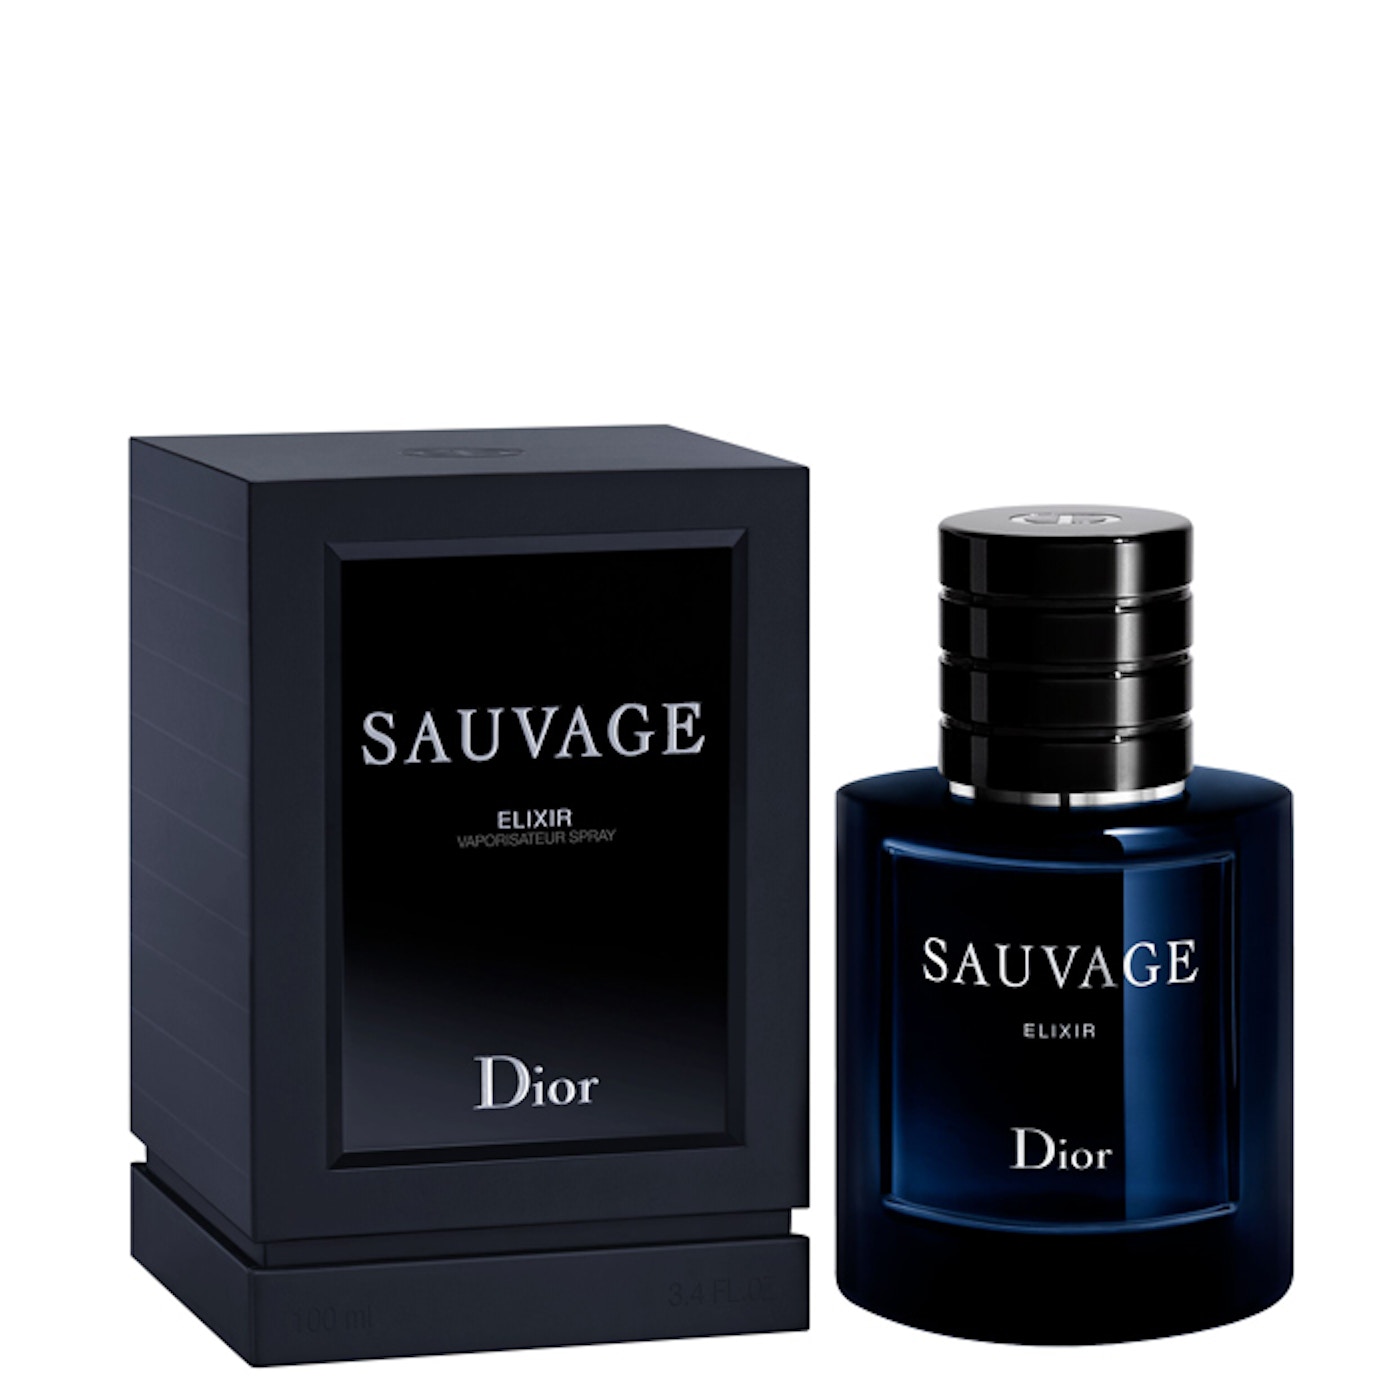 عطر ادکلن دیور ساواج (ساوج) الکسیر 60 میل | Dior Sauvage Elixir 60 ml